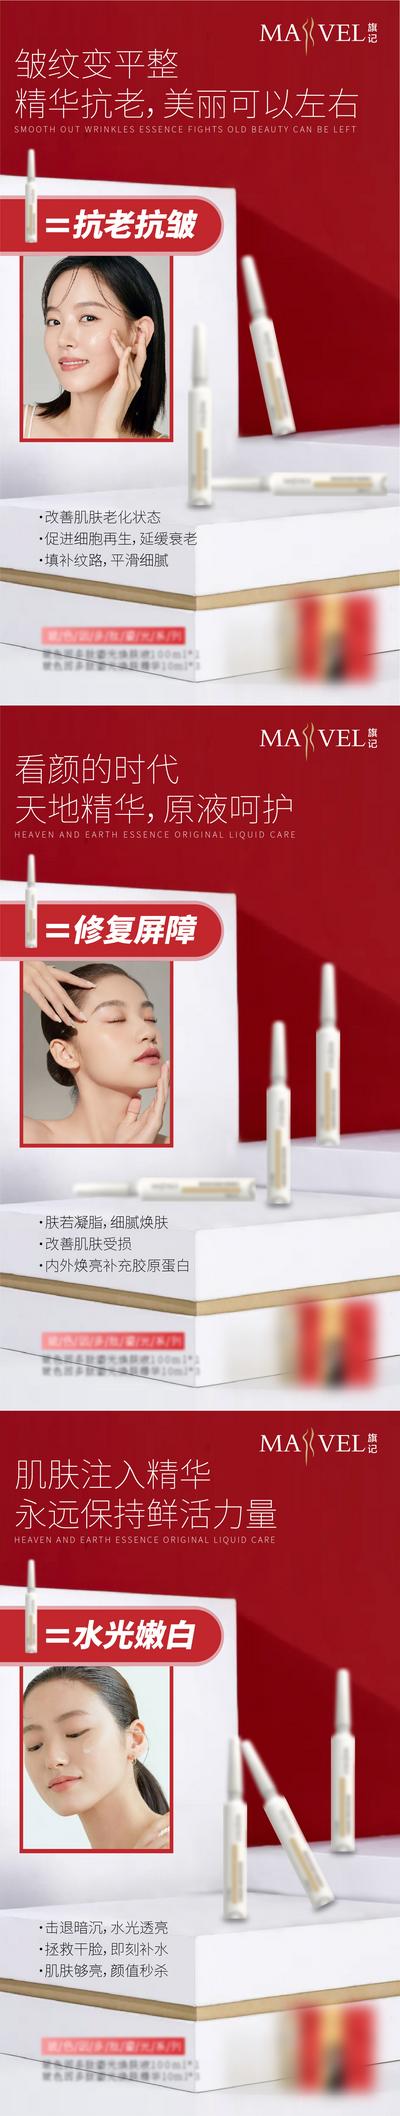 南门网 海报 微商 医美 护肤品 化妆品 产品功效 系列